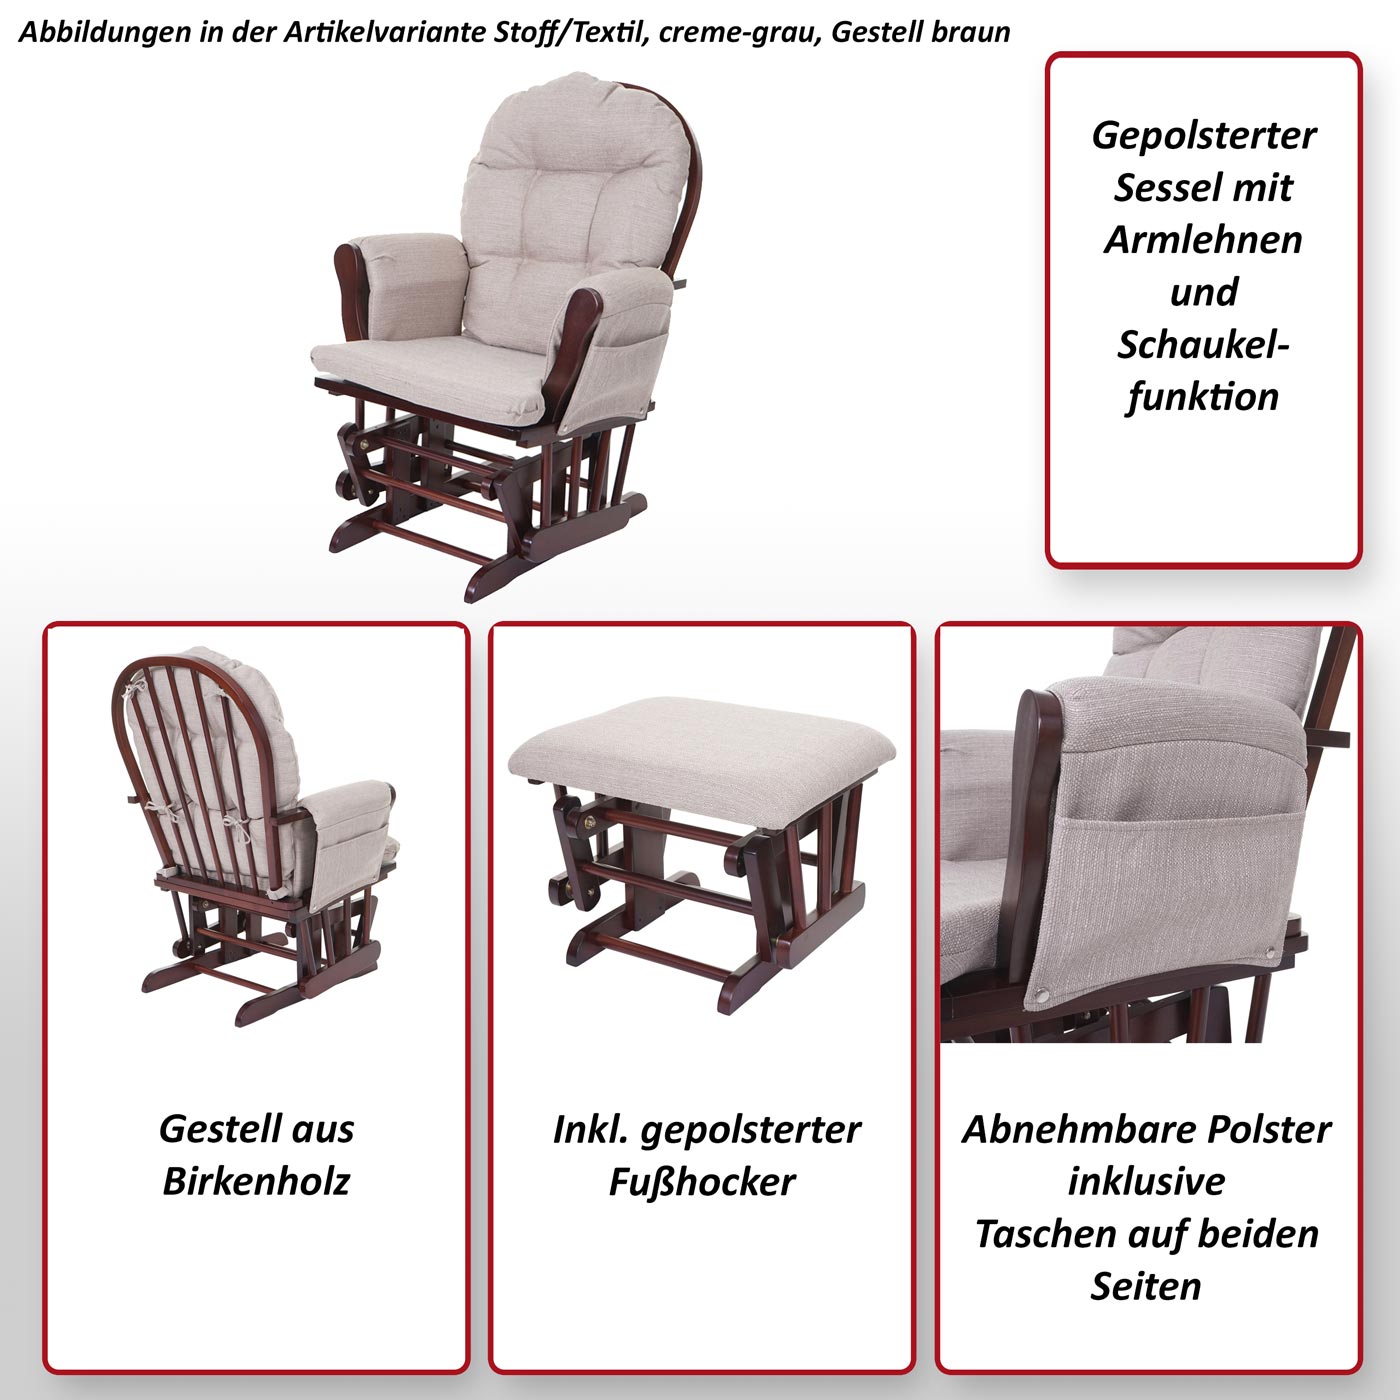 Relaxsessel HWC-C76, Schaukelstuhl Sessel Schwingstuhl mit Hocker ~  Stoff/Textil, creme-grau, Gestell braun von Heute-Wohnen